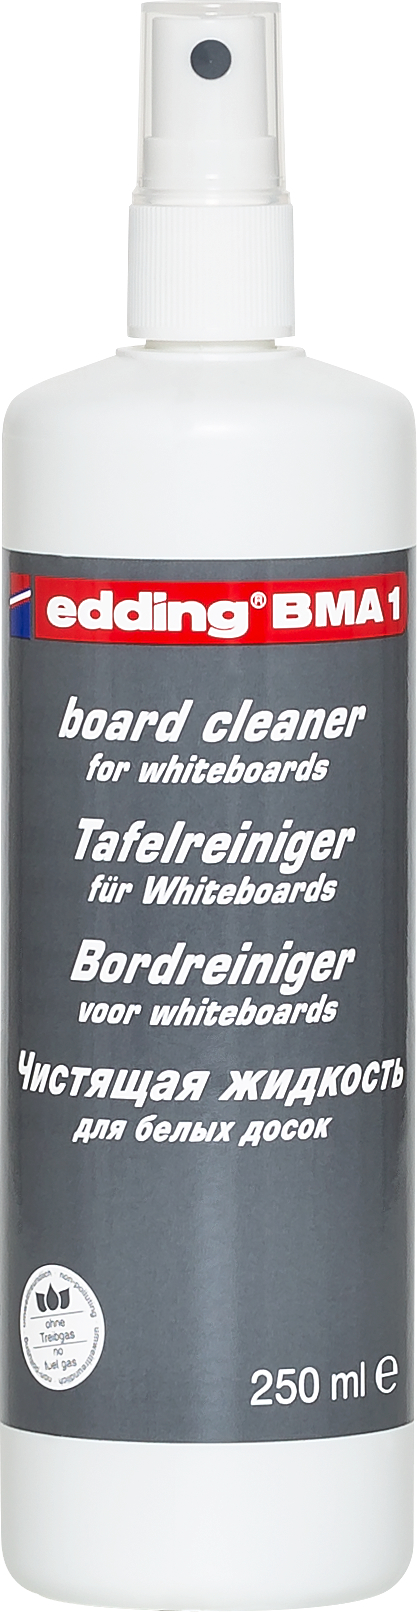 EDDING Edding detergent BMA1 250 ml